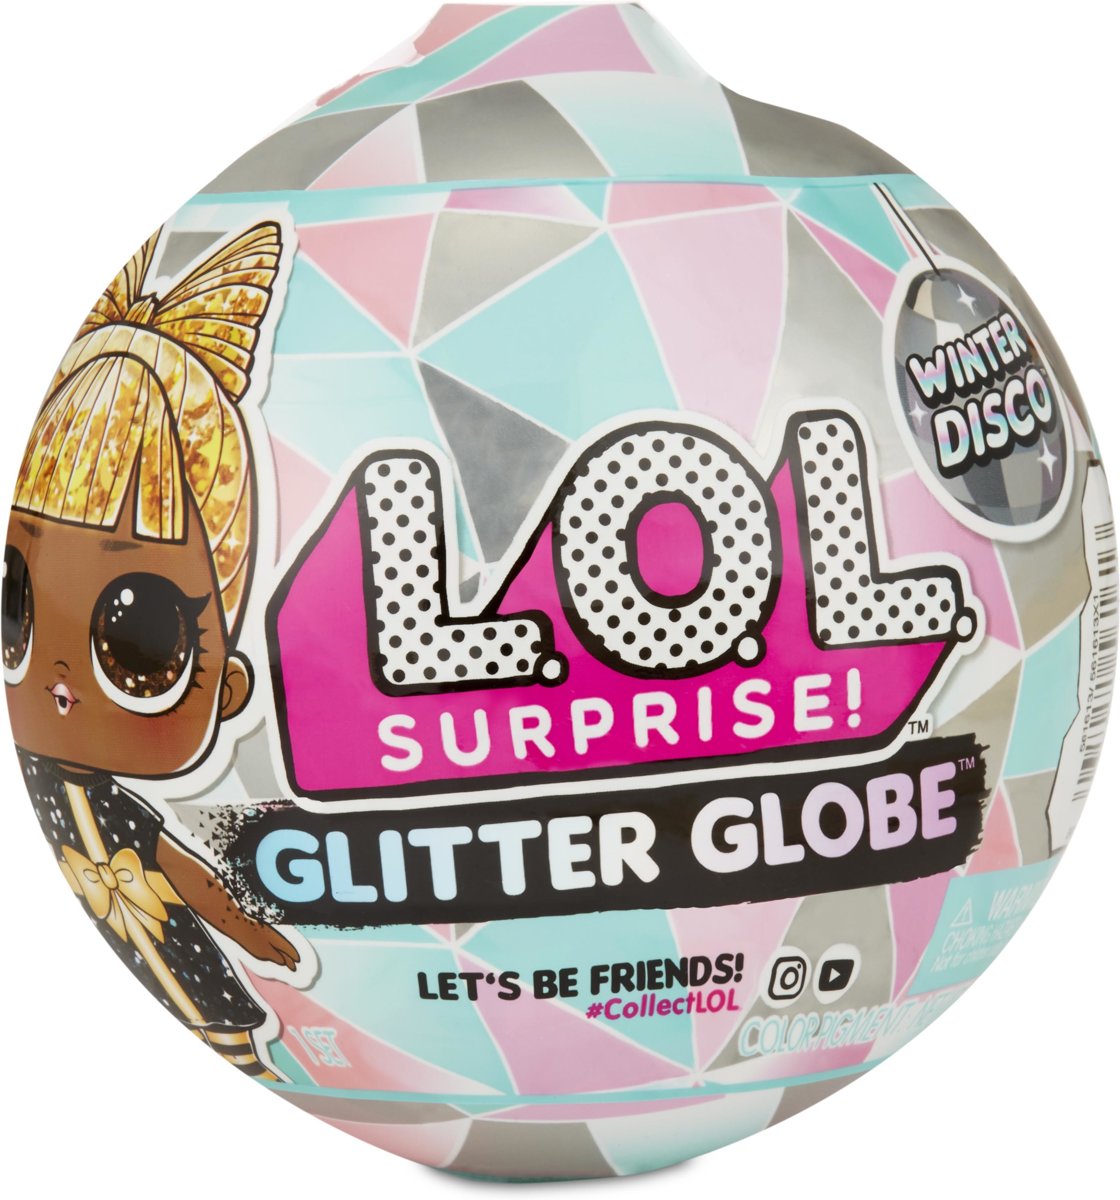 L.O.L. Surprise Glitter Globe Winter Disco - Series A - Minipop